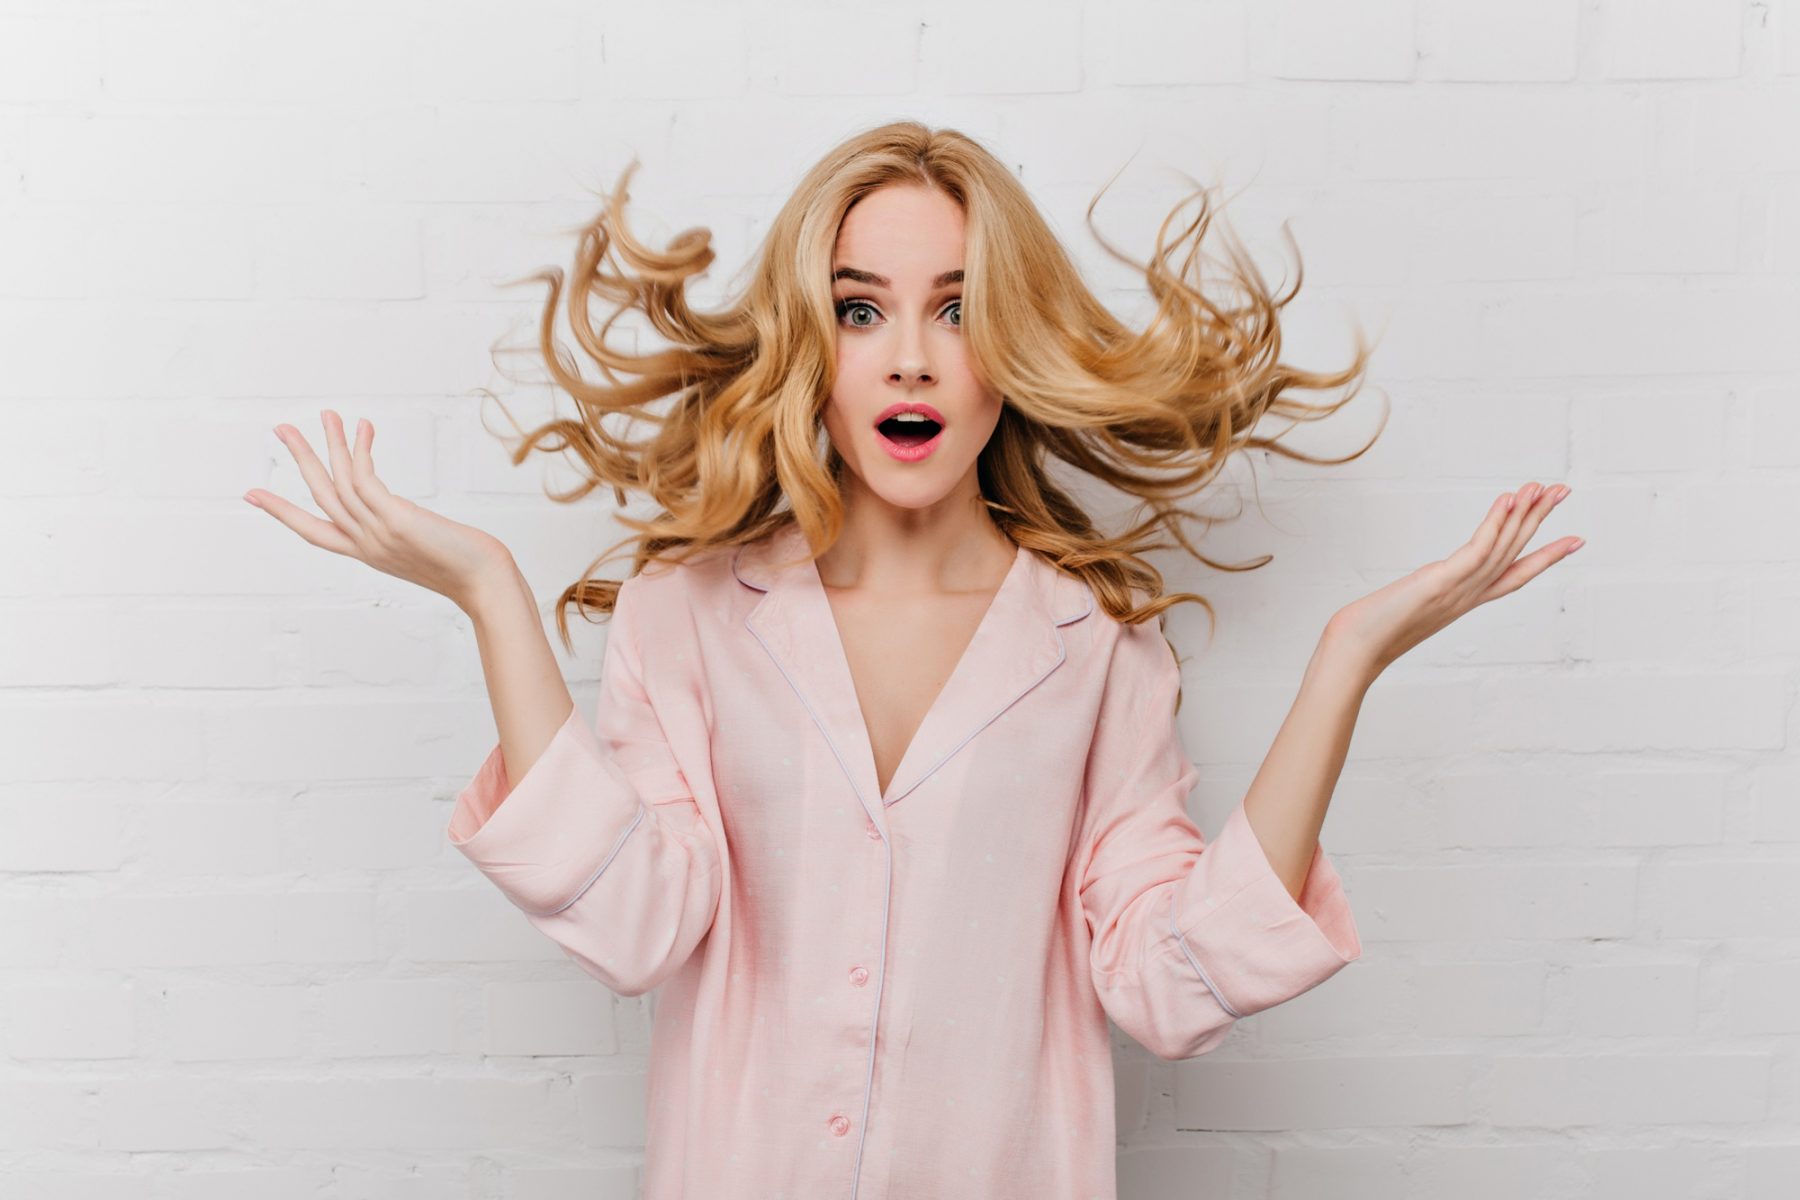 Ίσιωμα μαλλιών: Πώς να ισιώσετε τα μαλλιά σας χωρίς θερμότητα;